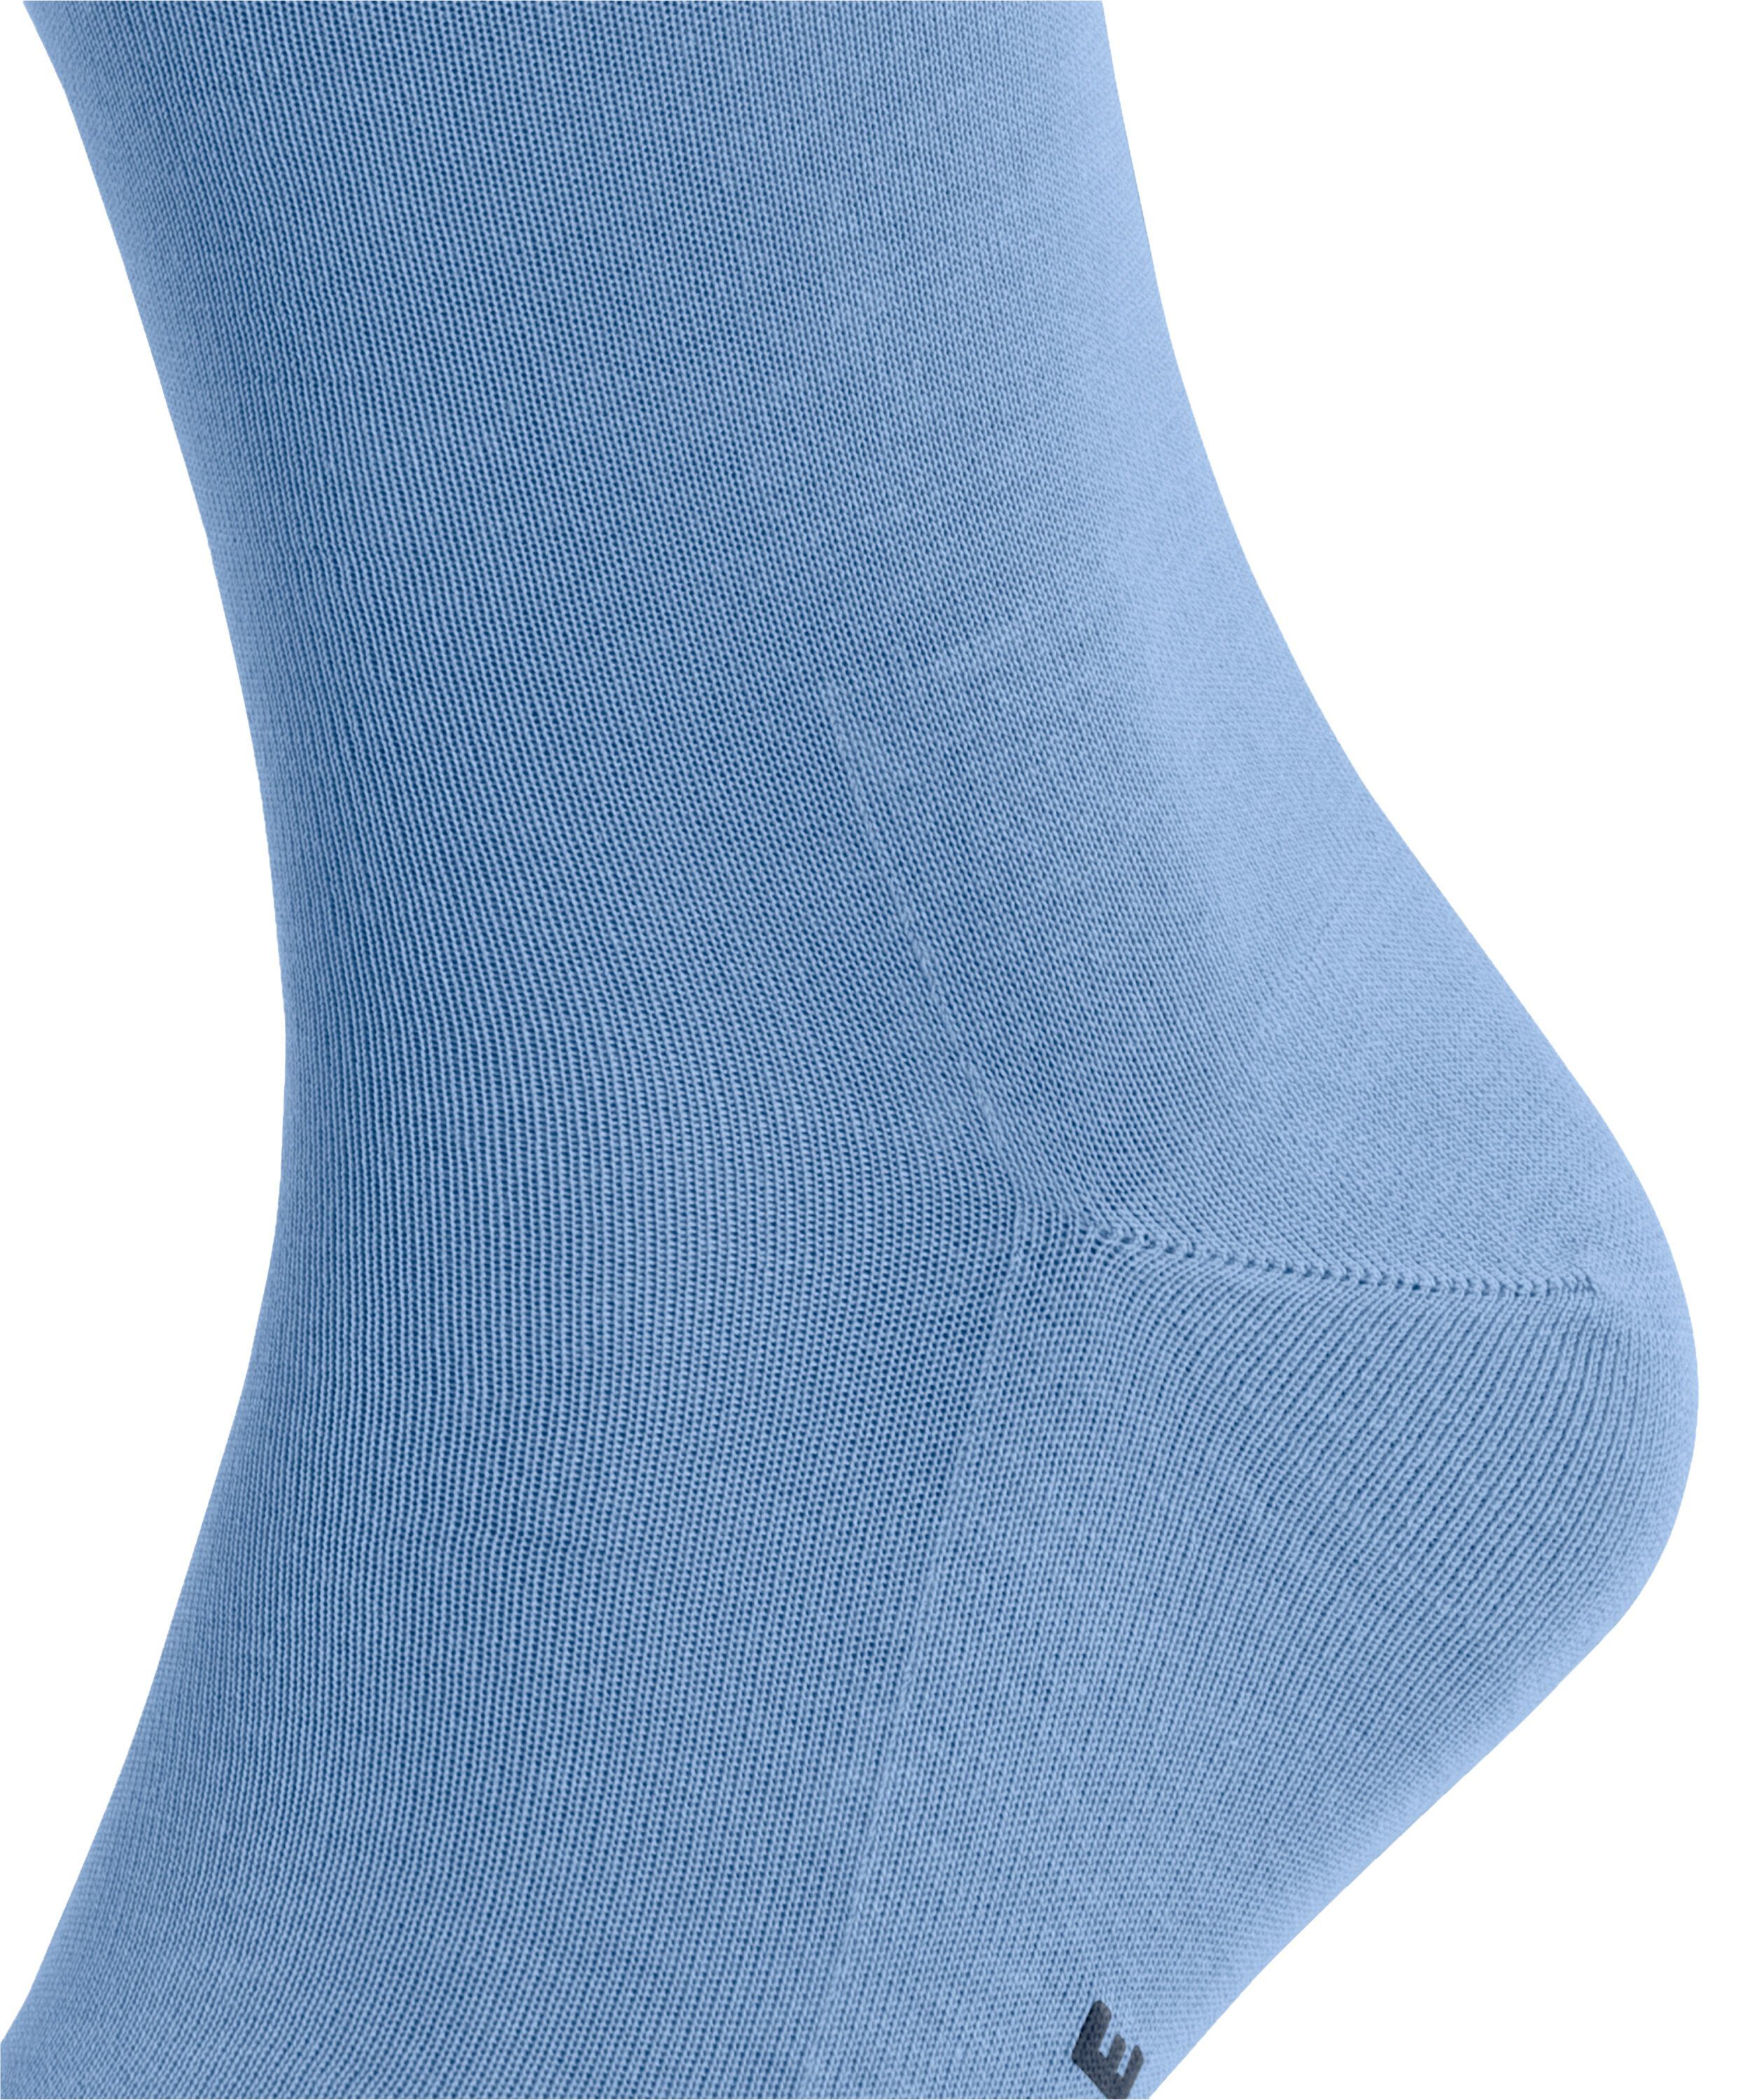 Tiago FALKE Socken cornflower blue (6554) (1-Paar)